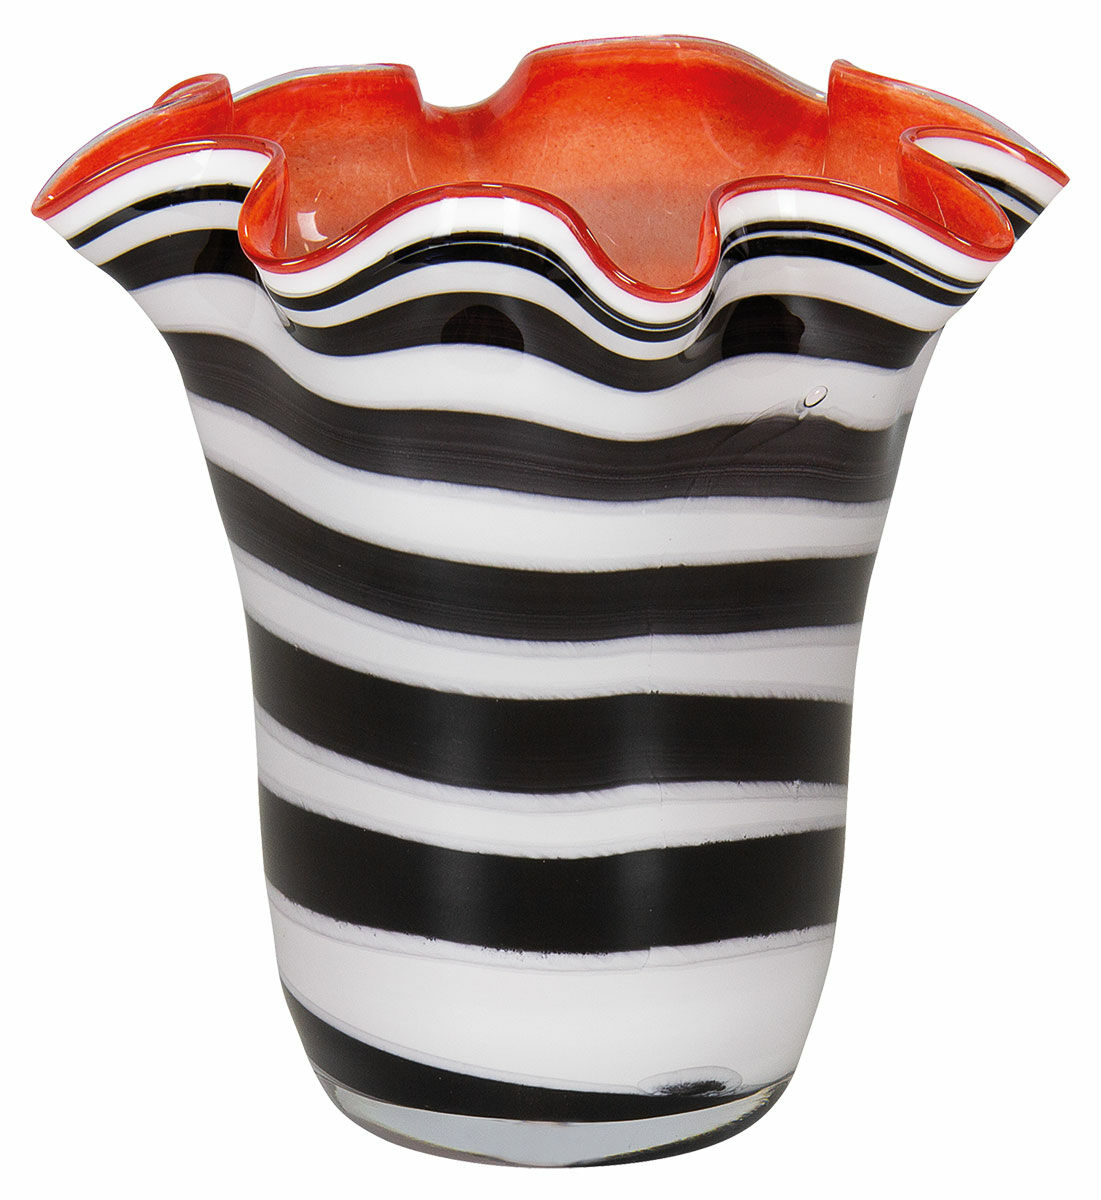 Glass vase "Zebra", orange version